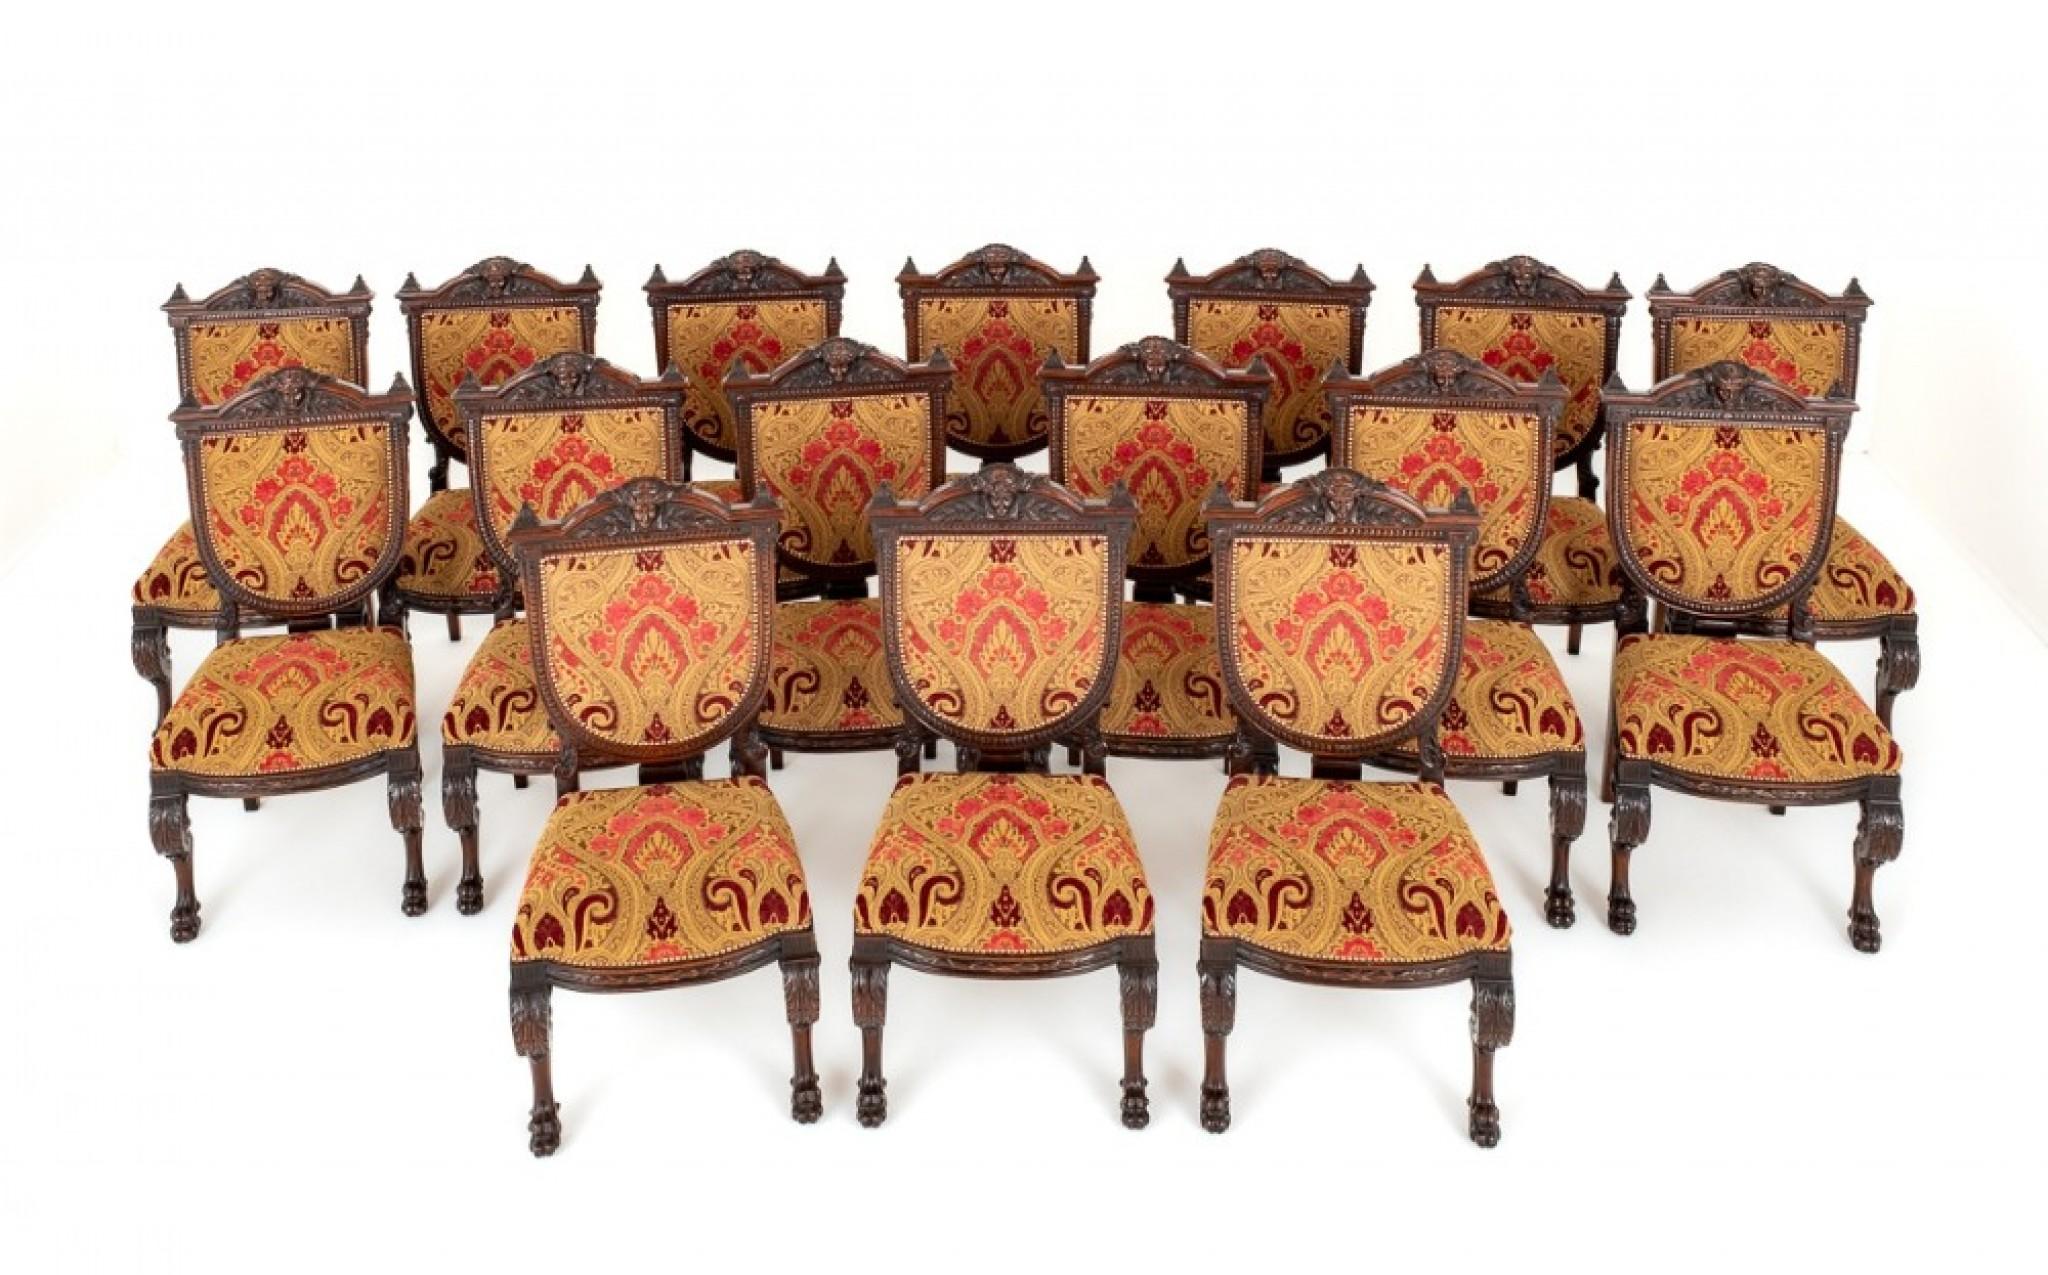 Superbe ensemble de 16 chaises de salle à manger en acajou de style Renaissance.
Circa 1920
Les chaises reposent sur des pieds avant sculptés et façonnés, des pieds en patte de lion et des pieds arrière en sabre.
La frise façonnée est d'une forme